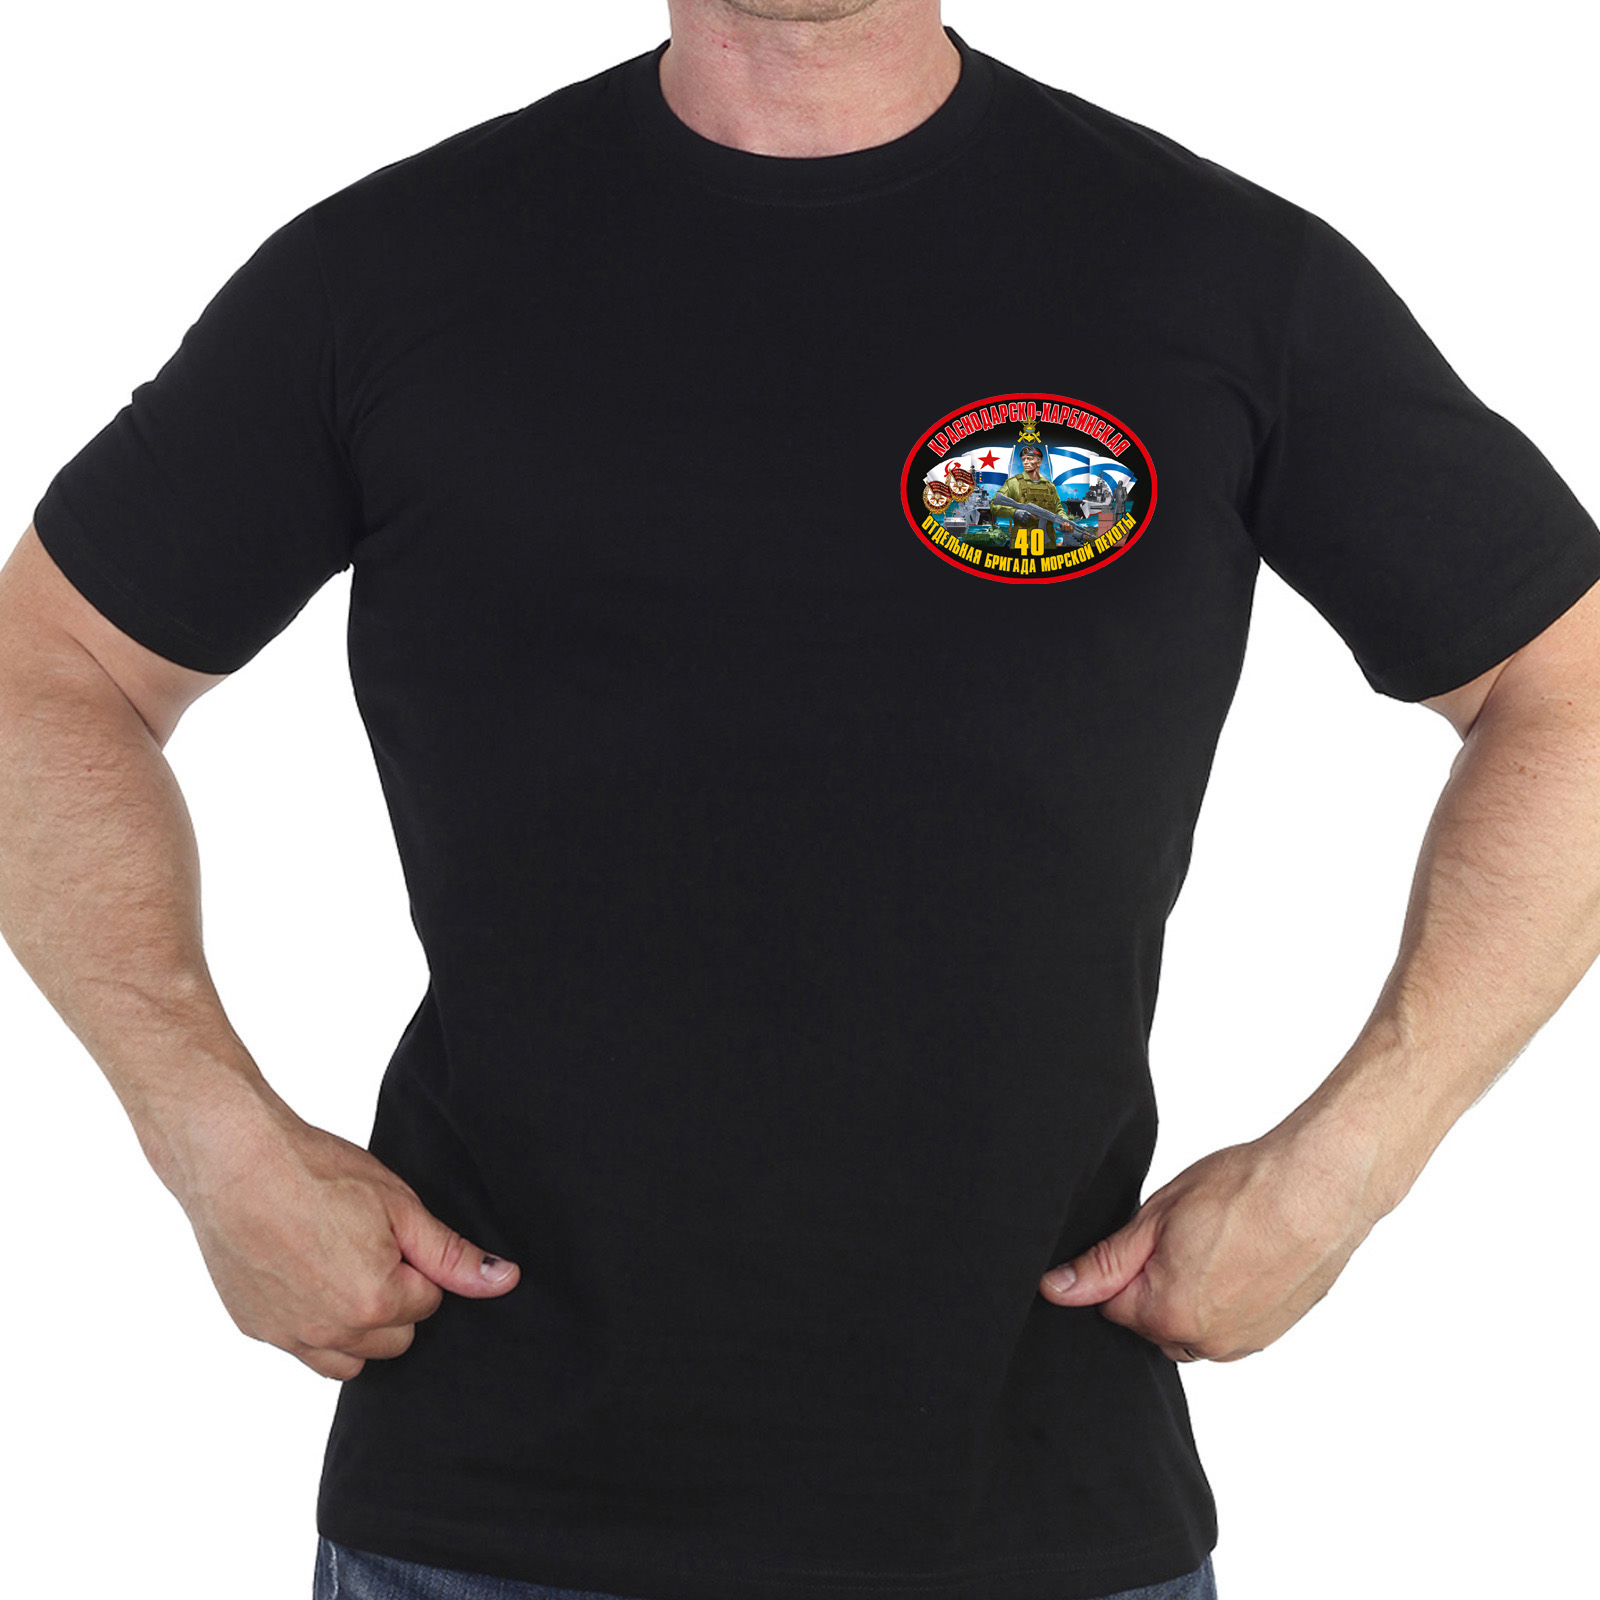 Купить надежную мужскую футболку с термонаклейкой 40 Отдельная бригада Морской Пехоты выгодно